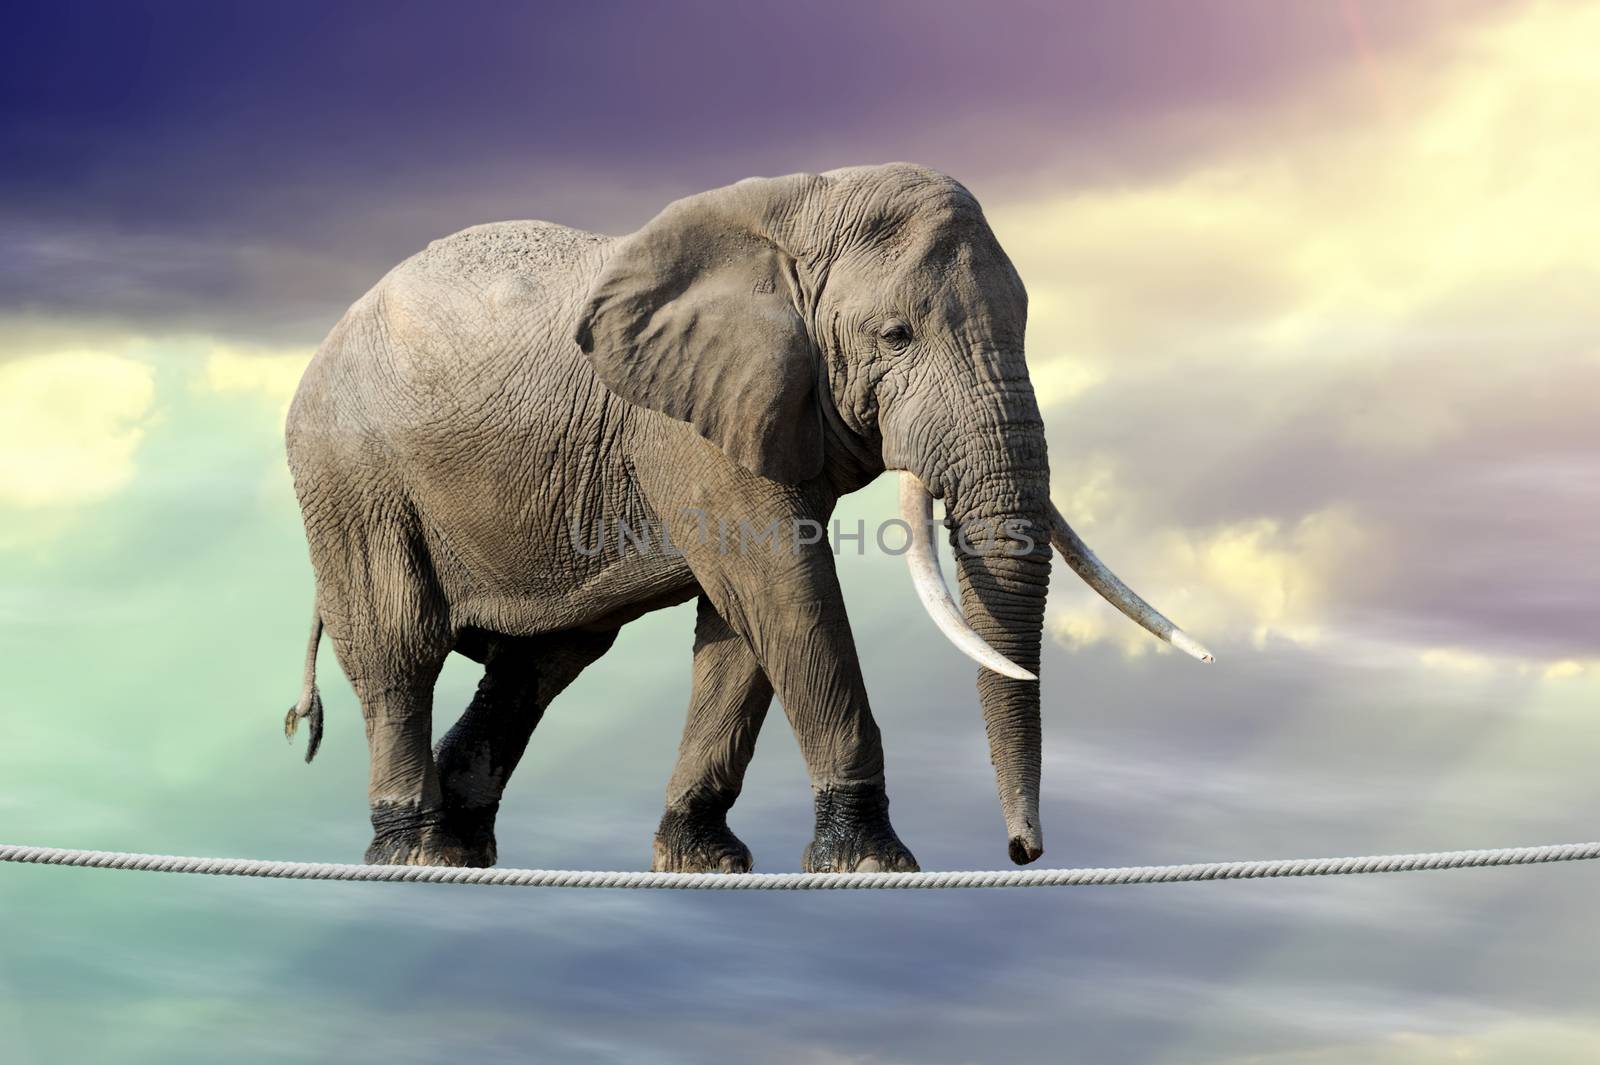 Elephant in sky walking on rope